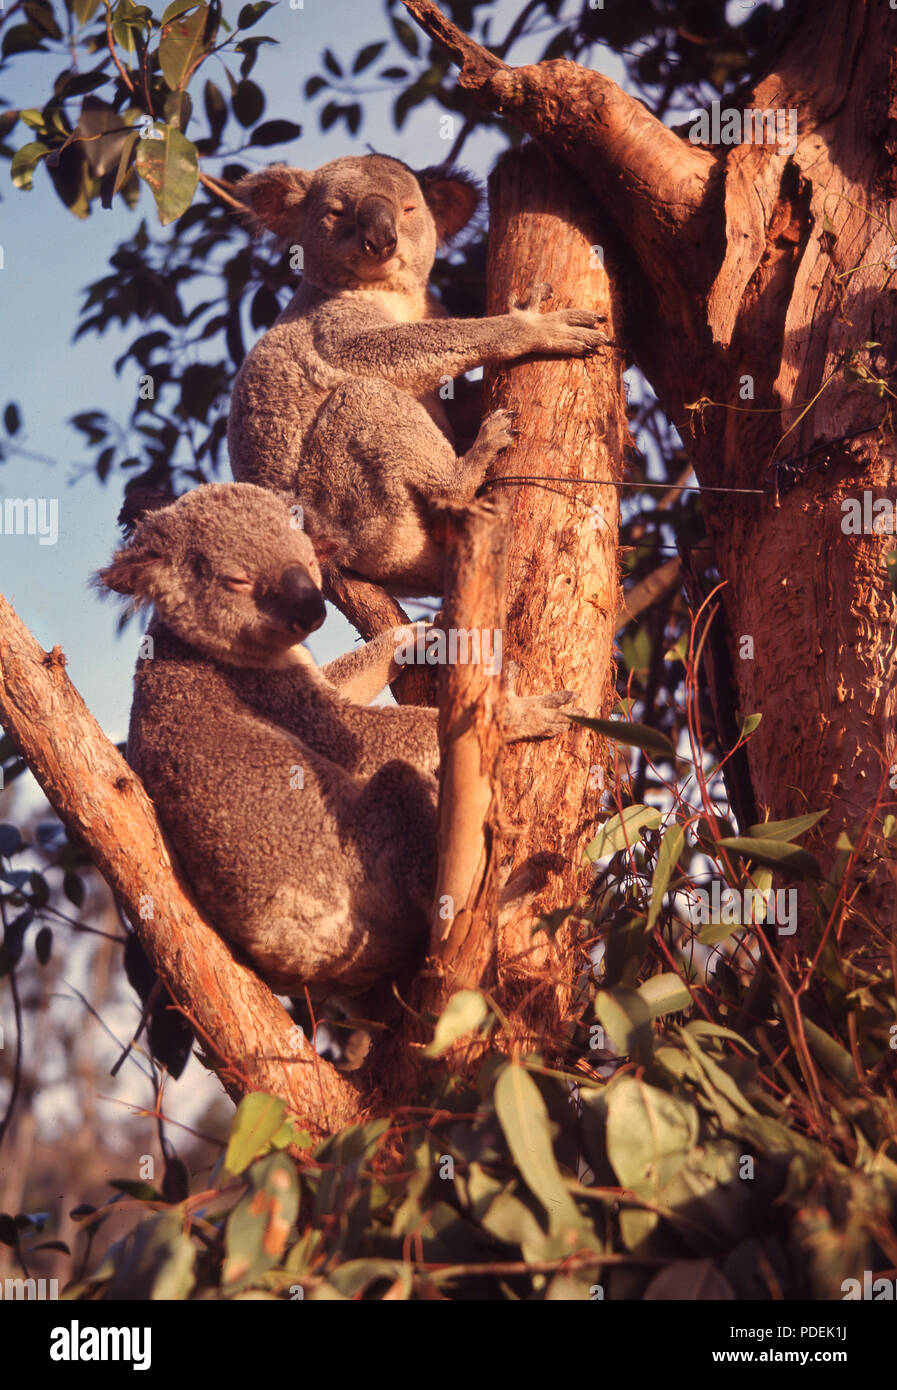 Années 60, deux koalas se reposant dans un arbre, Lone Pine Koala Sanctuary, Brisbane, Australie, le premier et le plus grand Sanctuaire de Koala créé en 1927. Parce que le animial a été chassé pour sa fourrure et son habitat naturel a été détruite par l'agriculture et l'urbanisation, des sanctuaires ont été establised tp protéger l'animal, qui est originaire de l'Australie. Banque D'Images